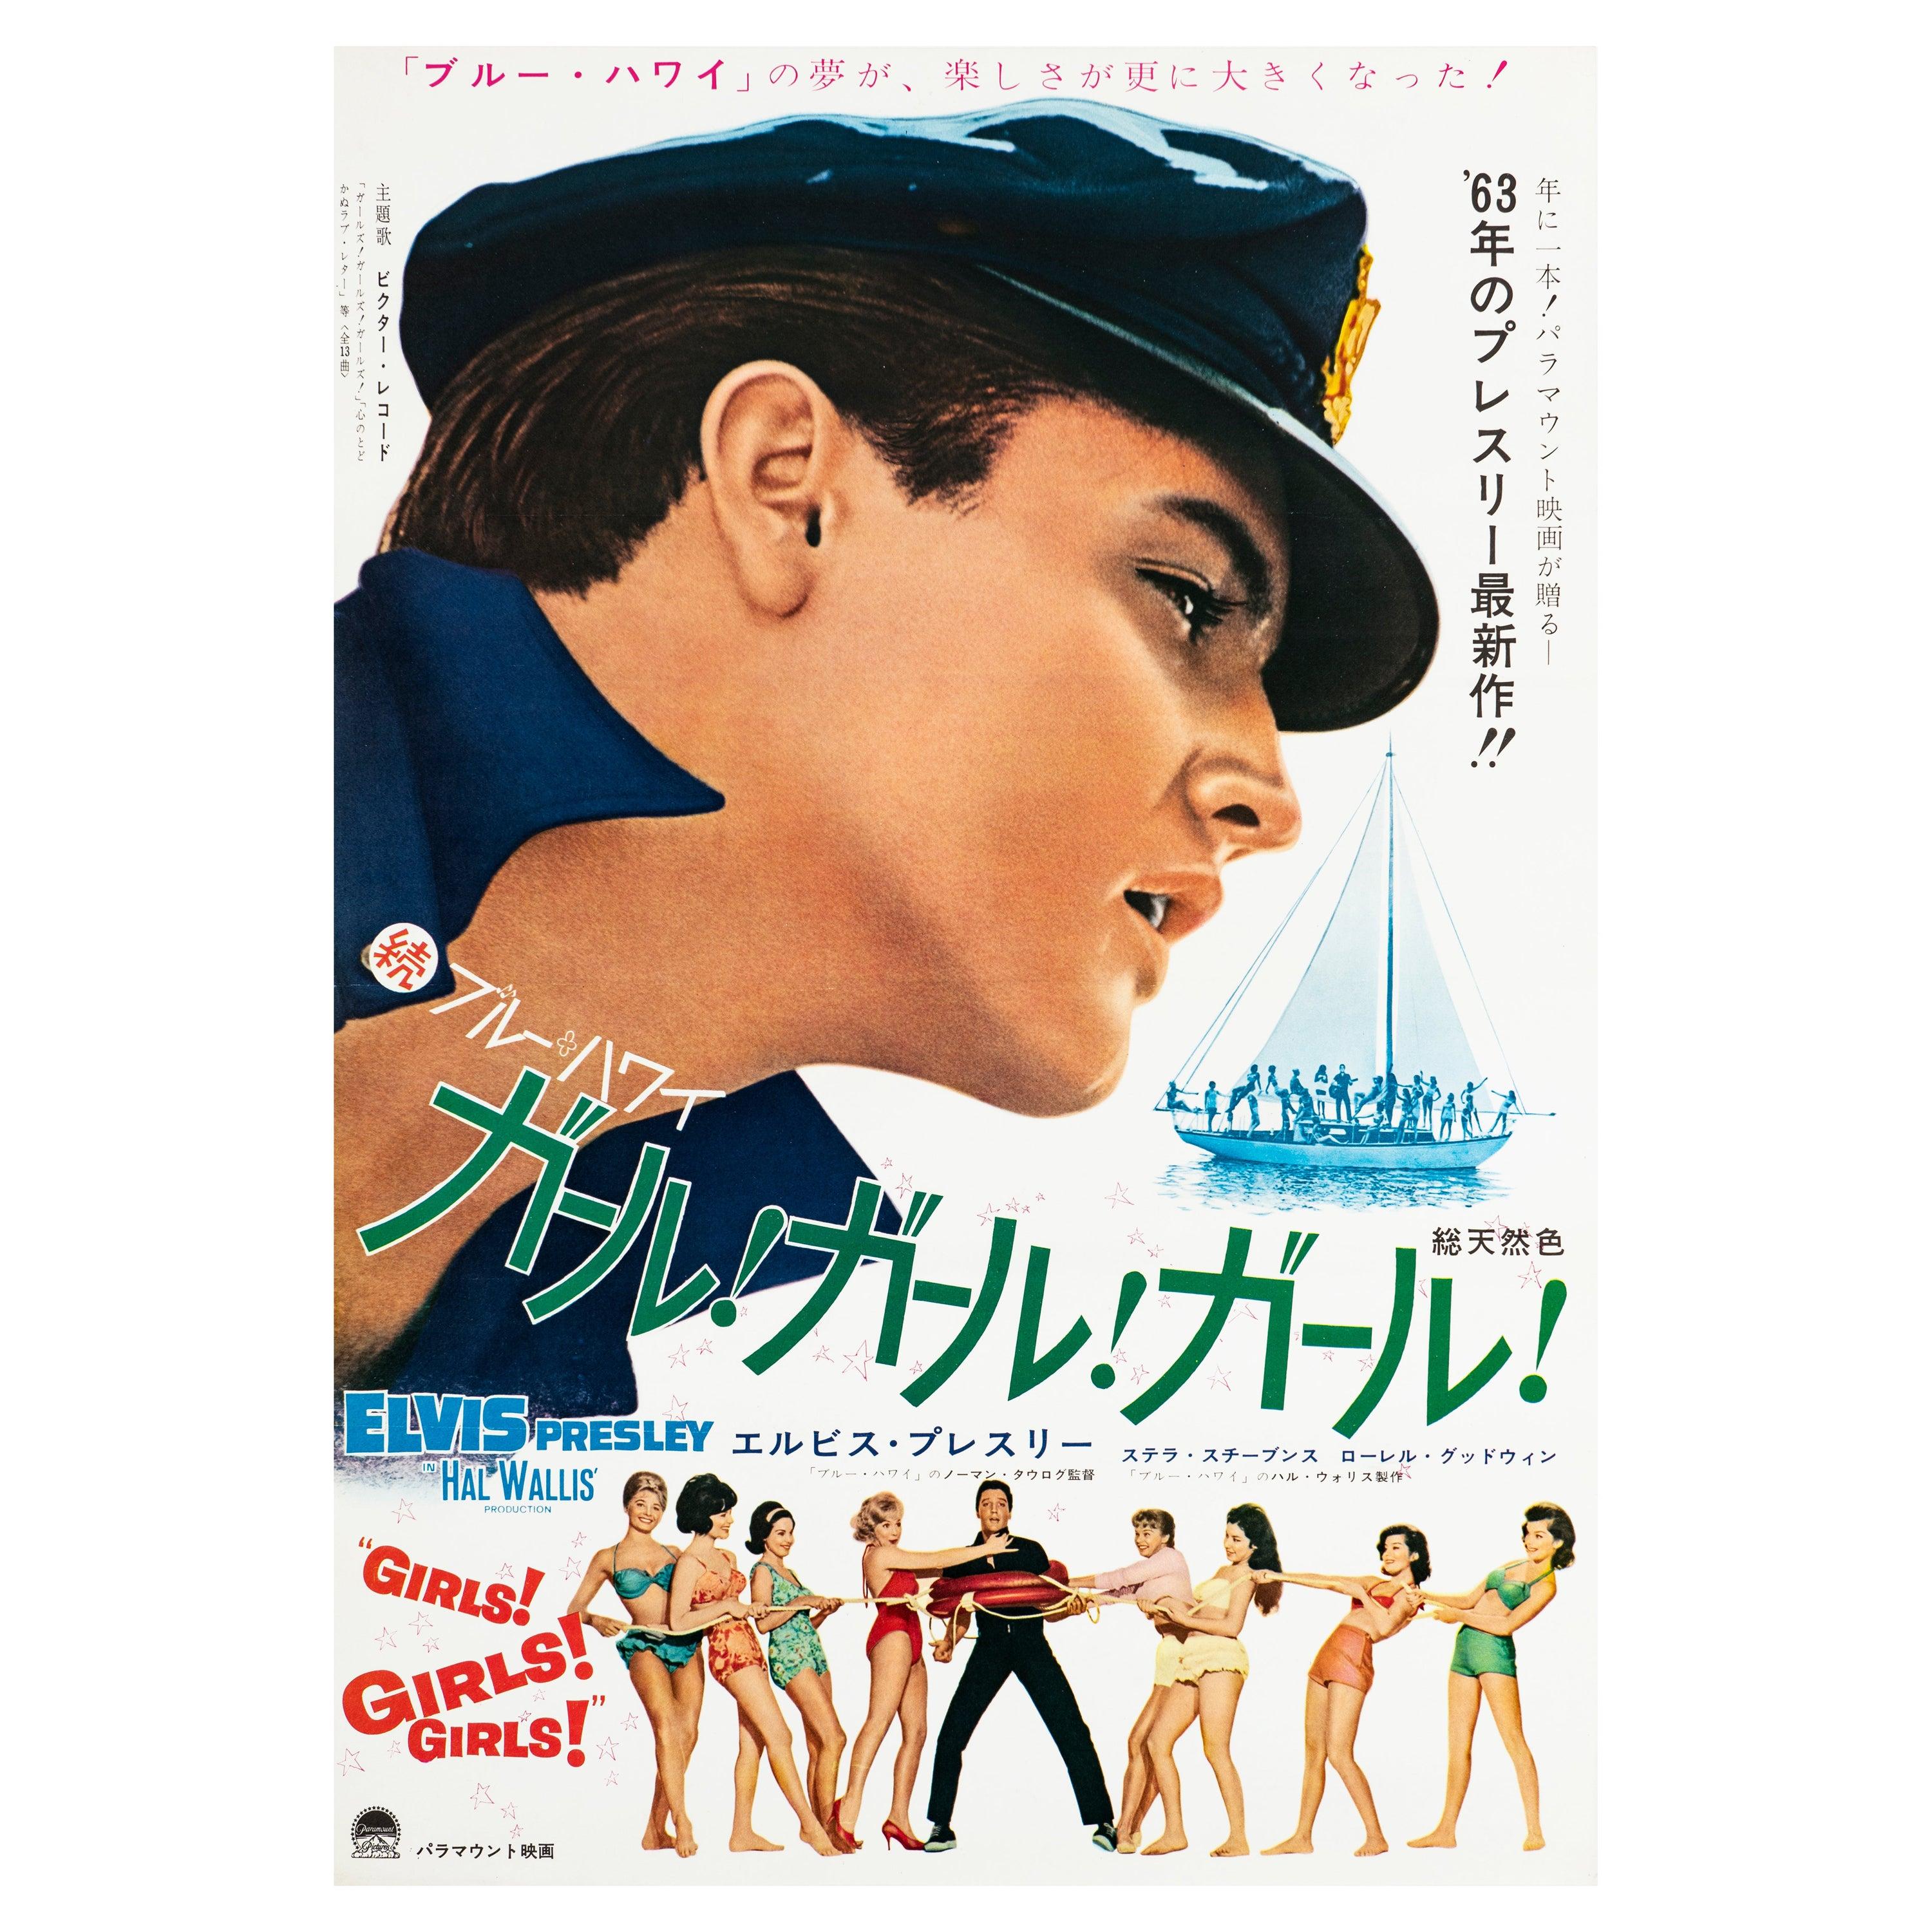 Elvis 'Girls! Girls! Girls!' Original Vintage Japanese B2 Movie Poster, 1963 - Art by Unknown